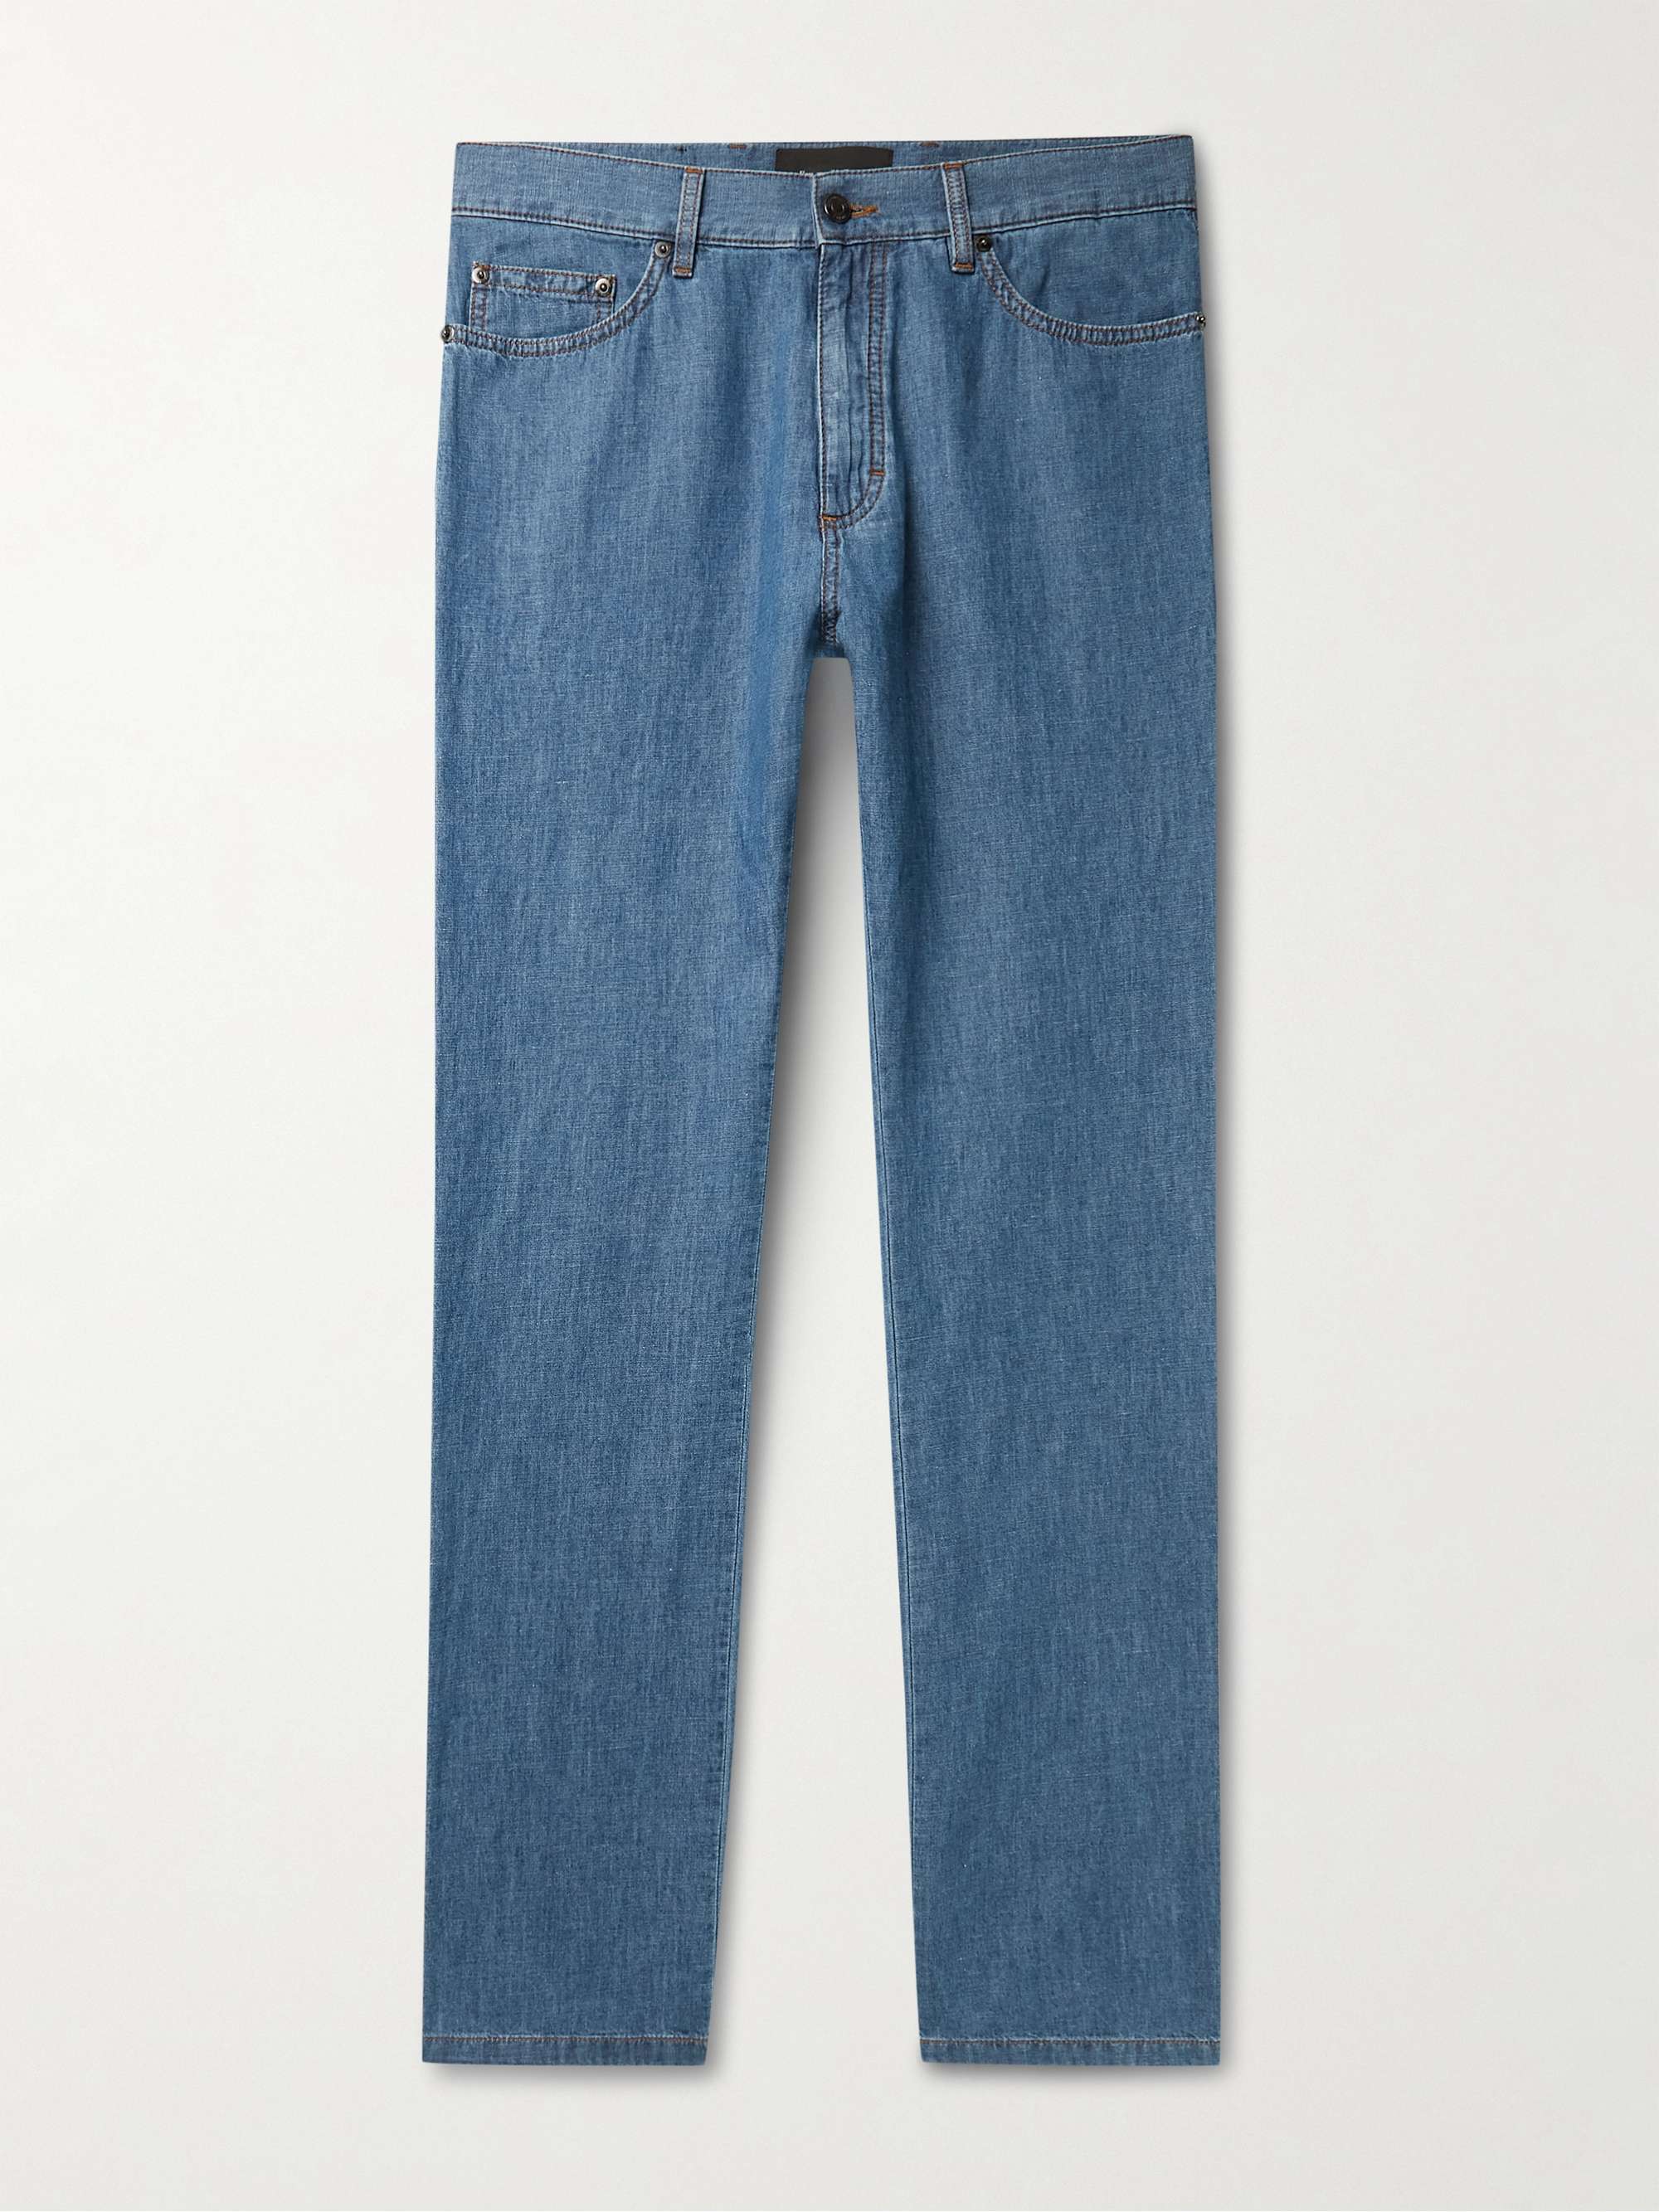 ERMENEGILDO ZEGNA Straight-Leg Stone-Washed Jeans